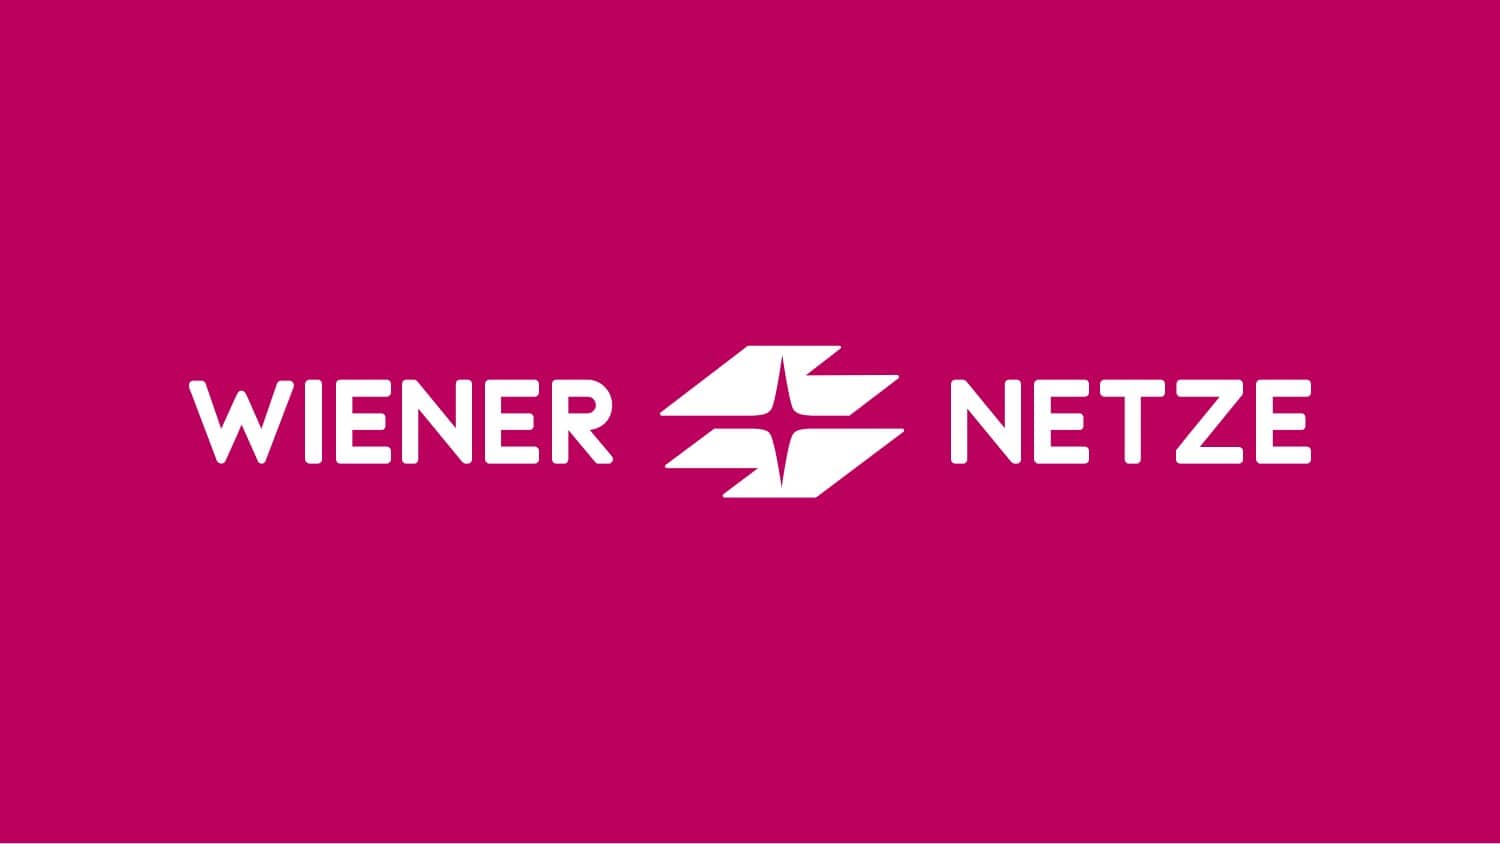 Logo Wiener Netze